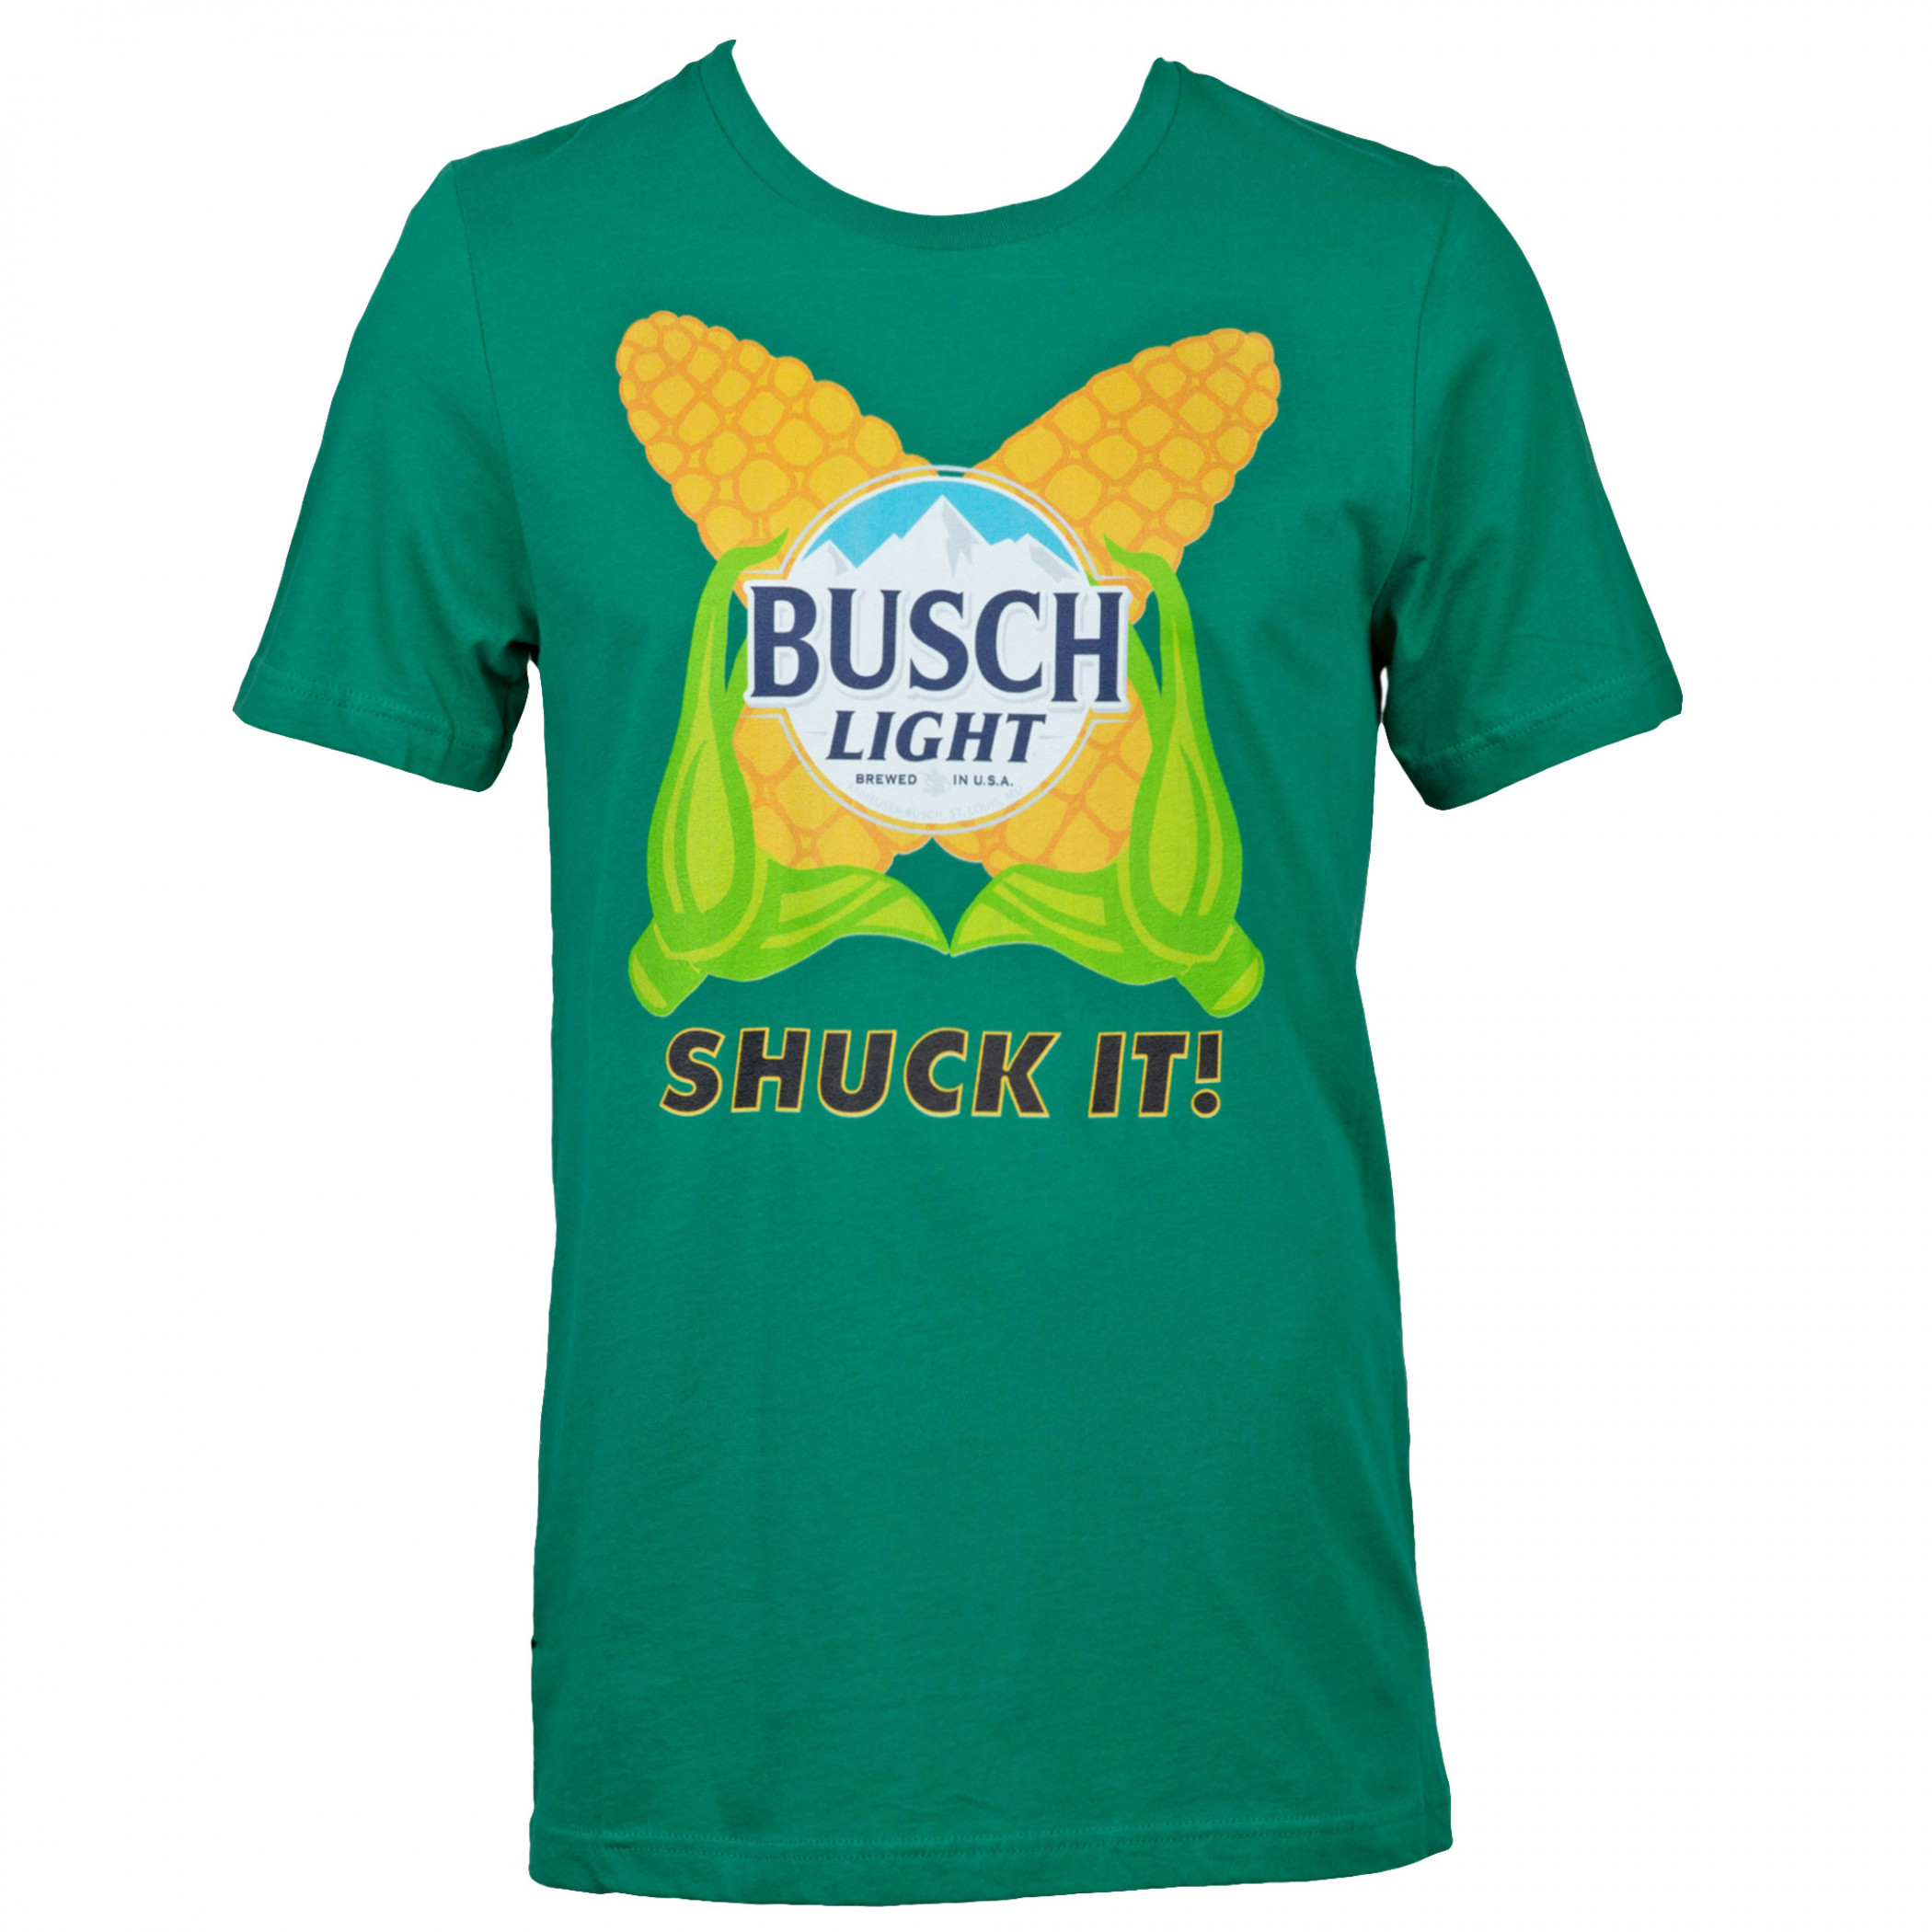 Busch Light Shuck It! Green Corn T-Shirt